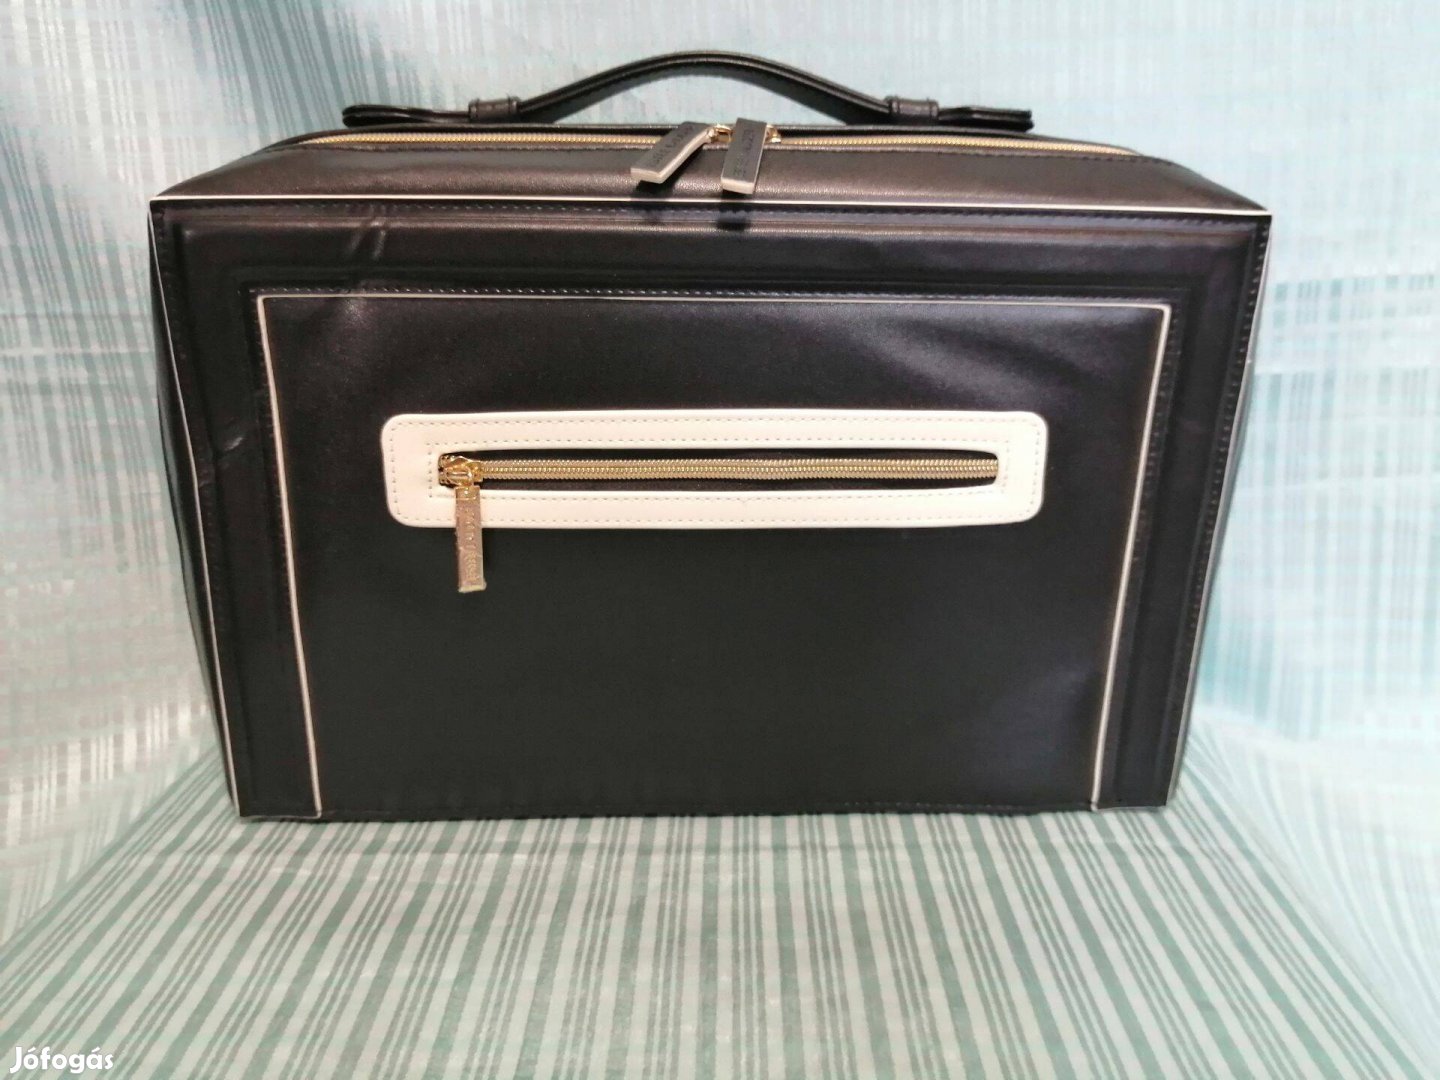 Estée Lauder írattartó,írathordozó kézi táska, kis bőrönd